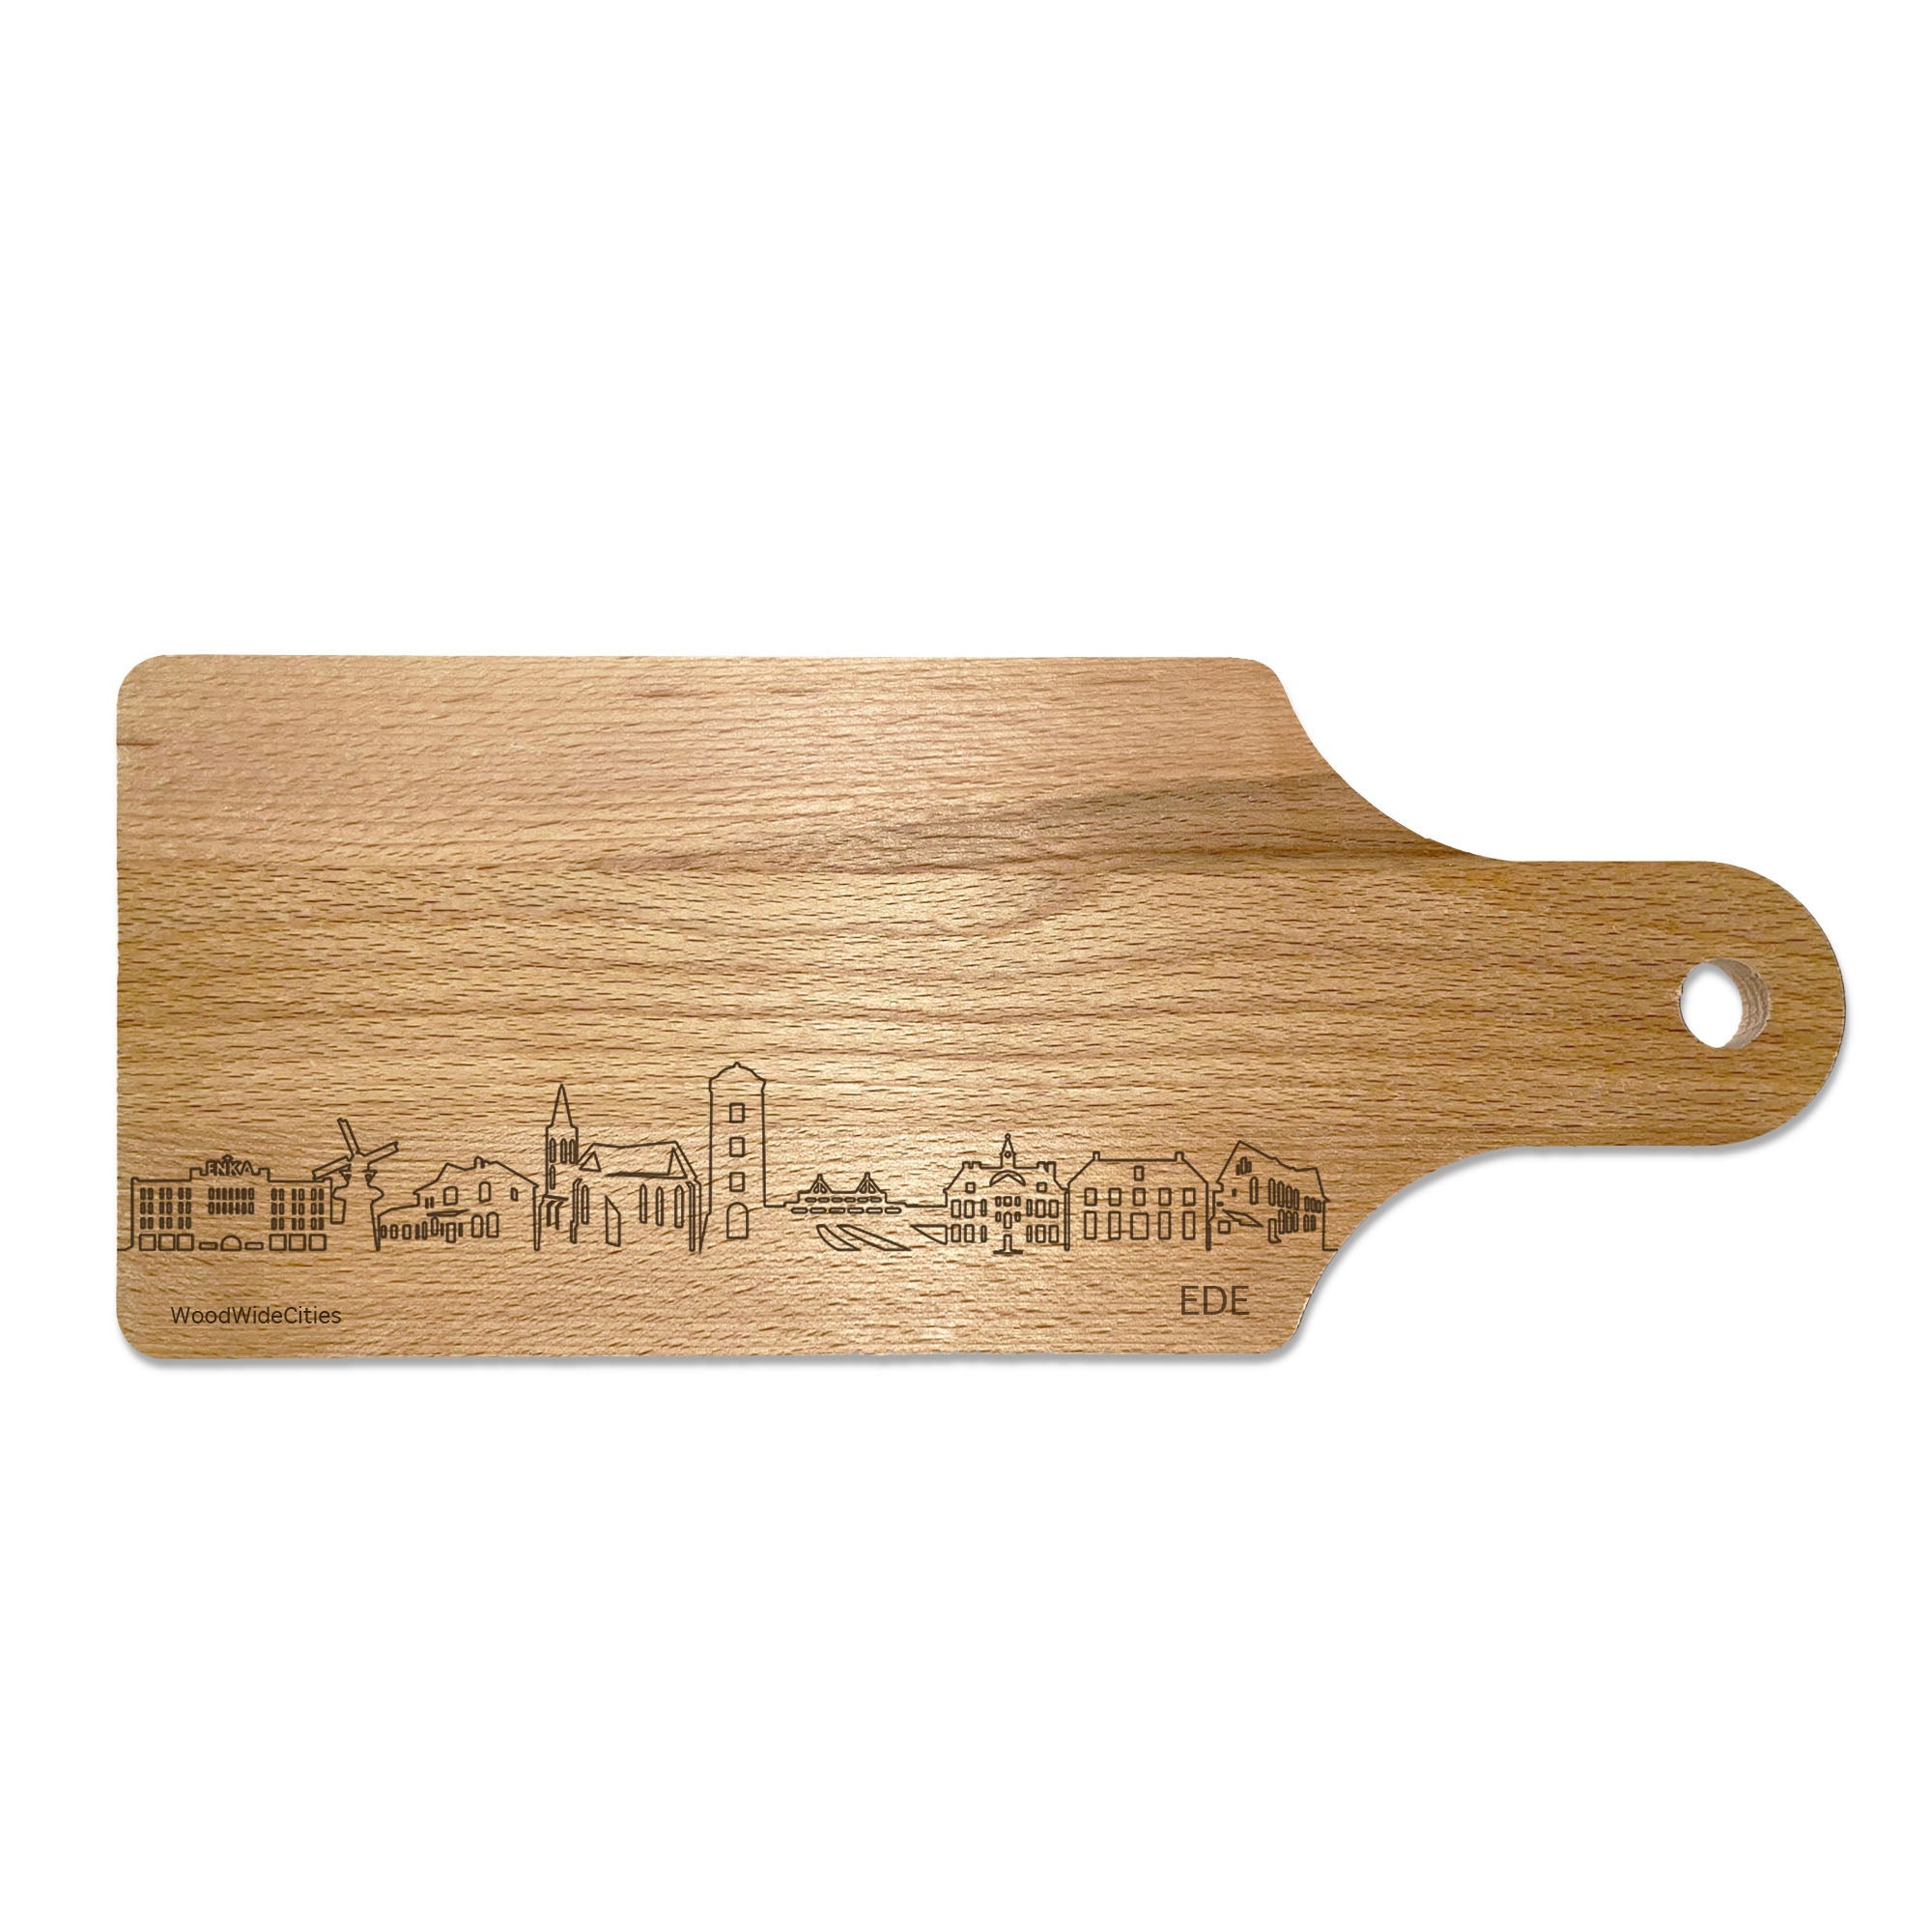 Skyline Borrelplank Ede houten cadeau decoratie relatiegeschenk van WoodWideCities